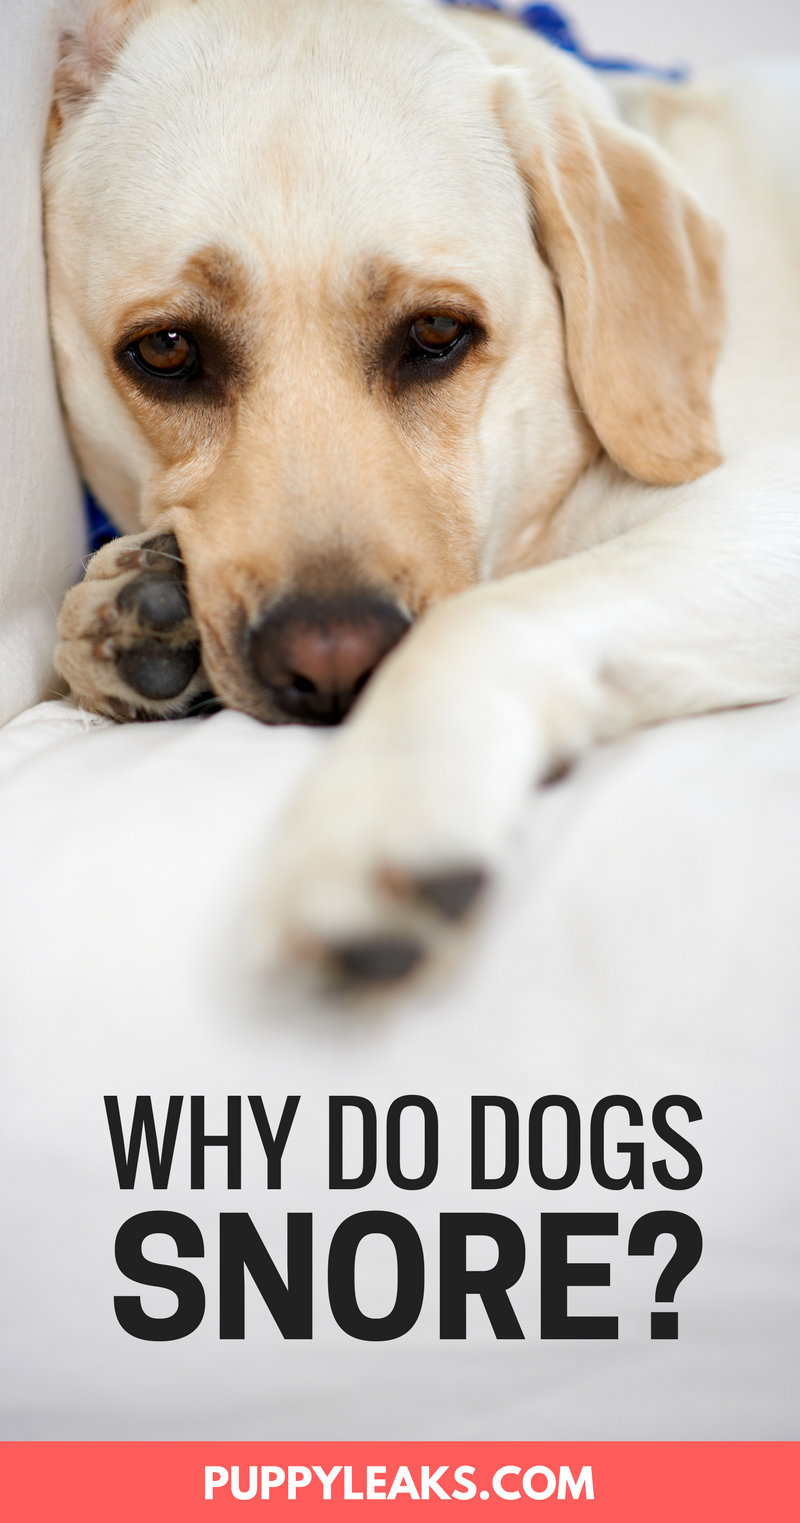 Varför snarkar hundar?